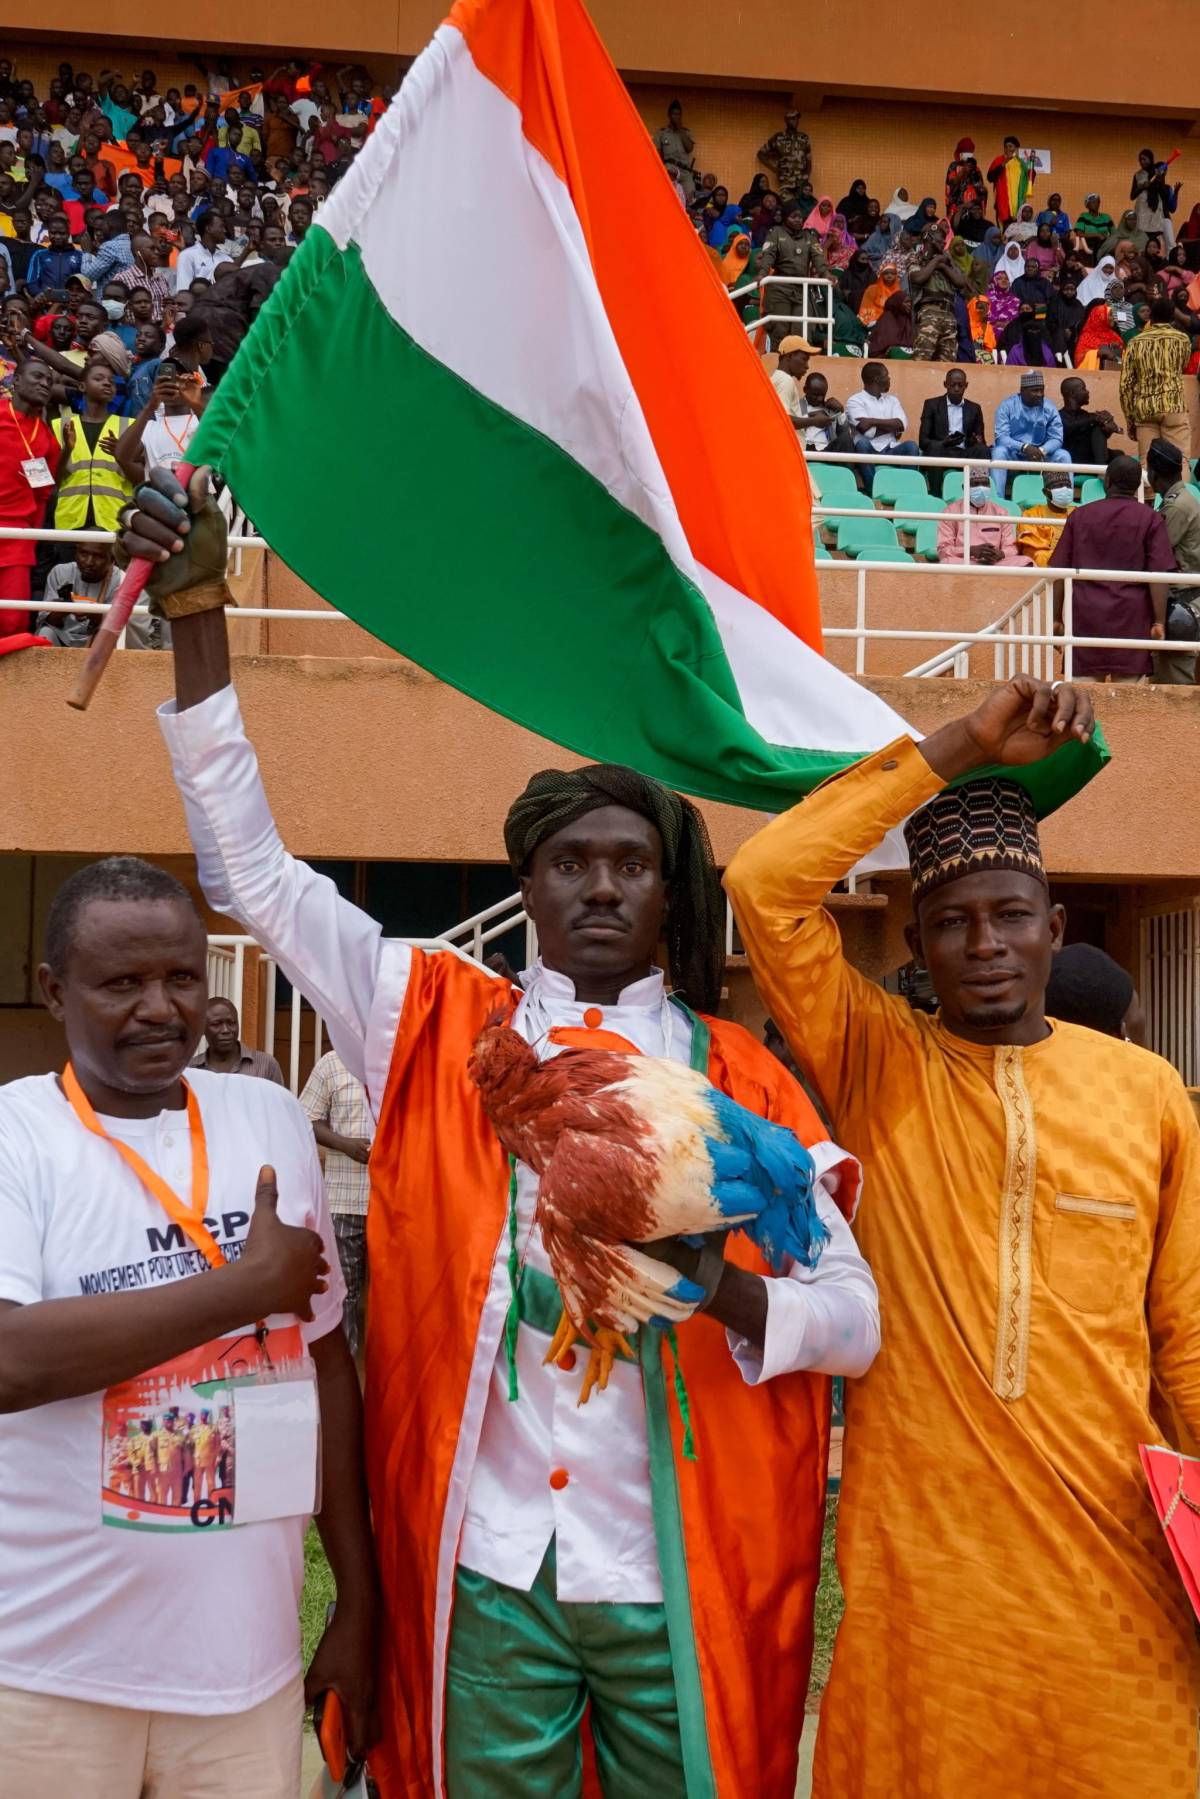 L'aereo, i "terroristi" e le accuse: i golpisti del Niger contro la Francia